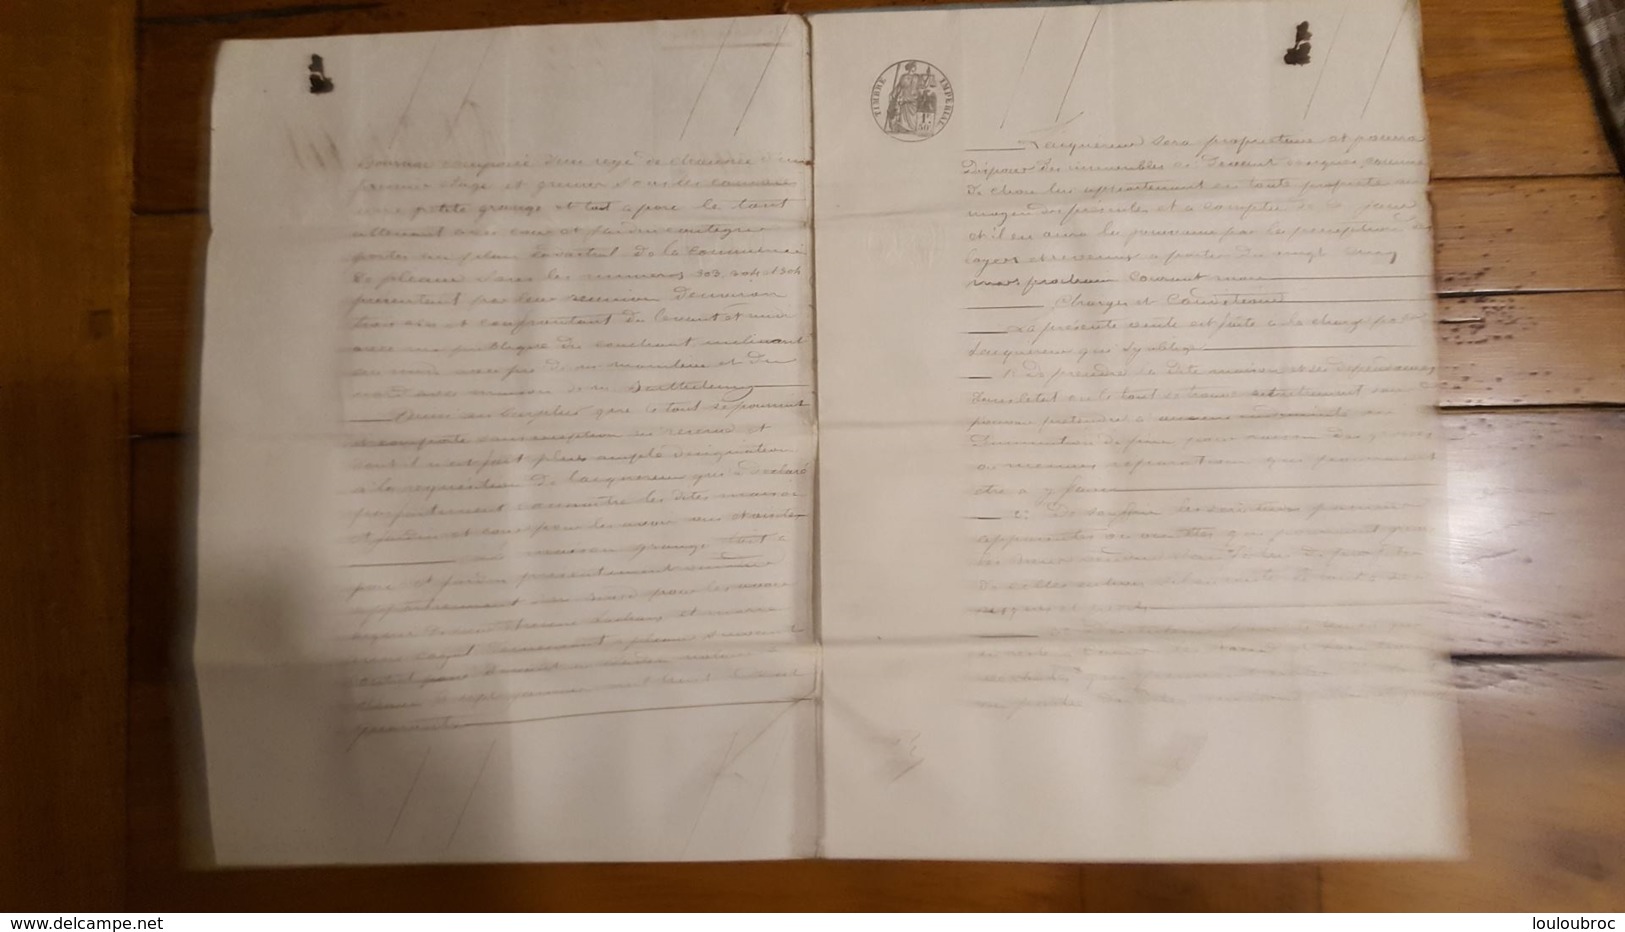 ACTE DE MARS 1864  VENTE COMMUNE DE PLEAUX CANTAL - Historische Documenten